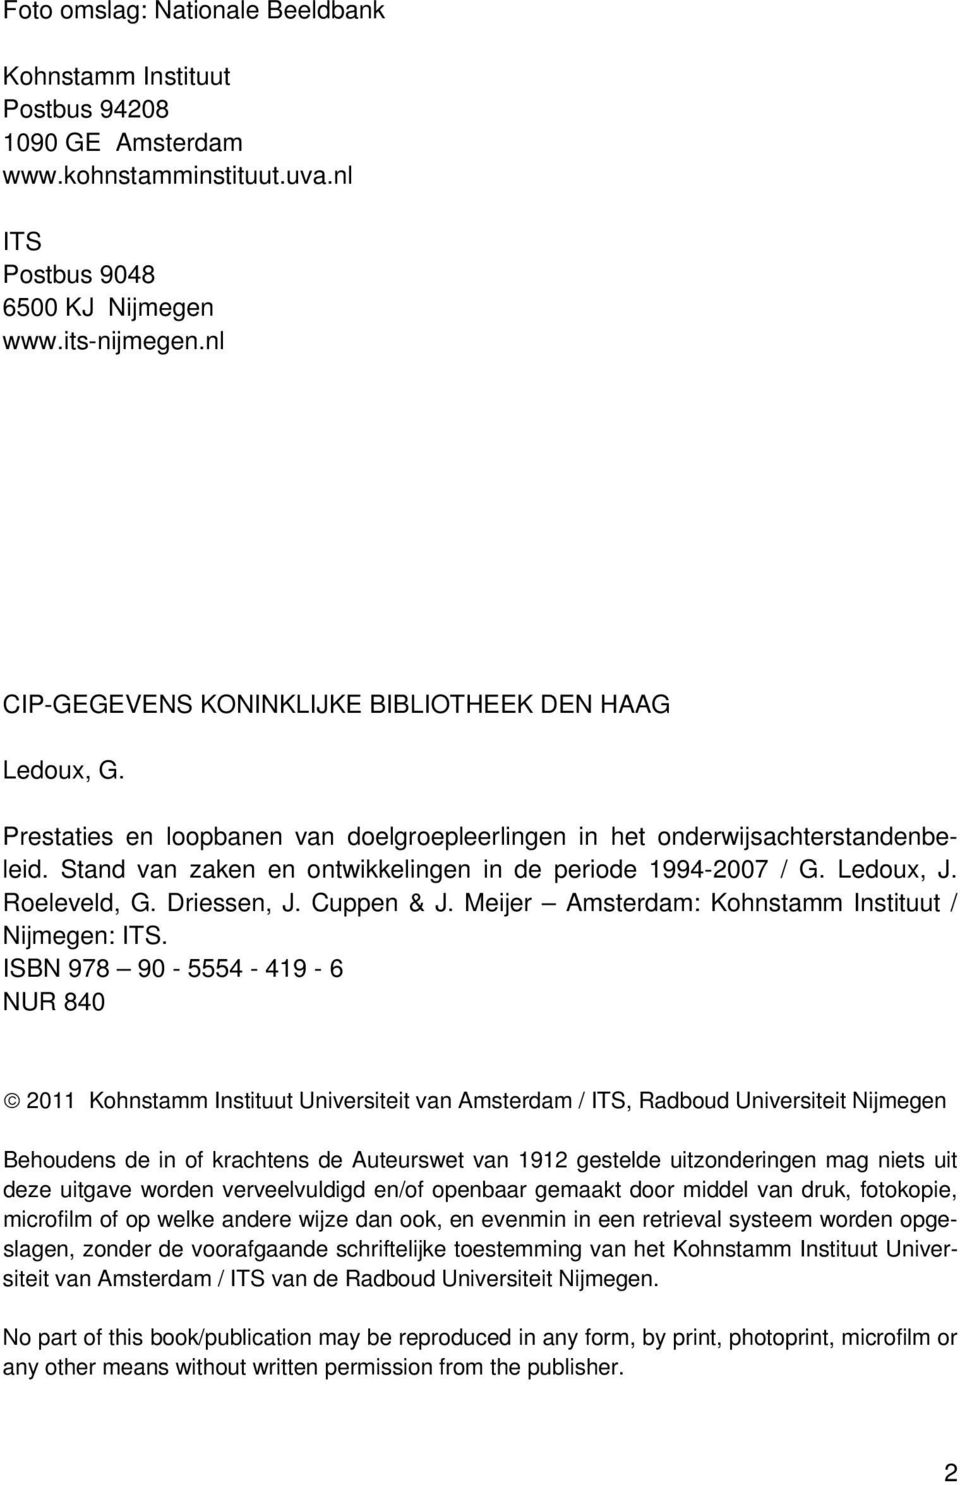 Stand van zaken en ontwikkelingen in de periode 1994-2007 / G. Ledoux, J. Roeleveld, G. Driessen, J. Cuppen & J. Meijer Amsterdam: Kohnstamm Instituut / Nijmegen: ITS.